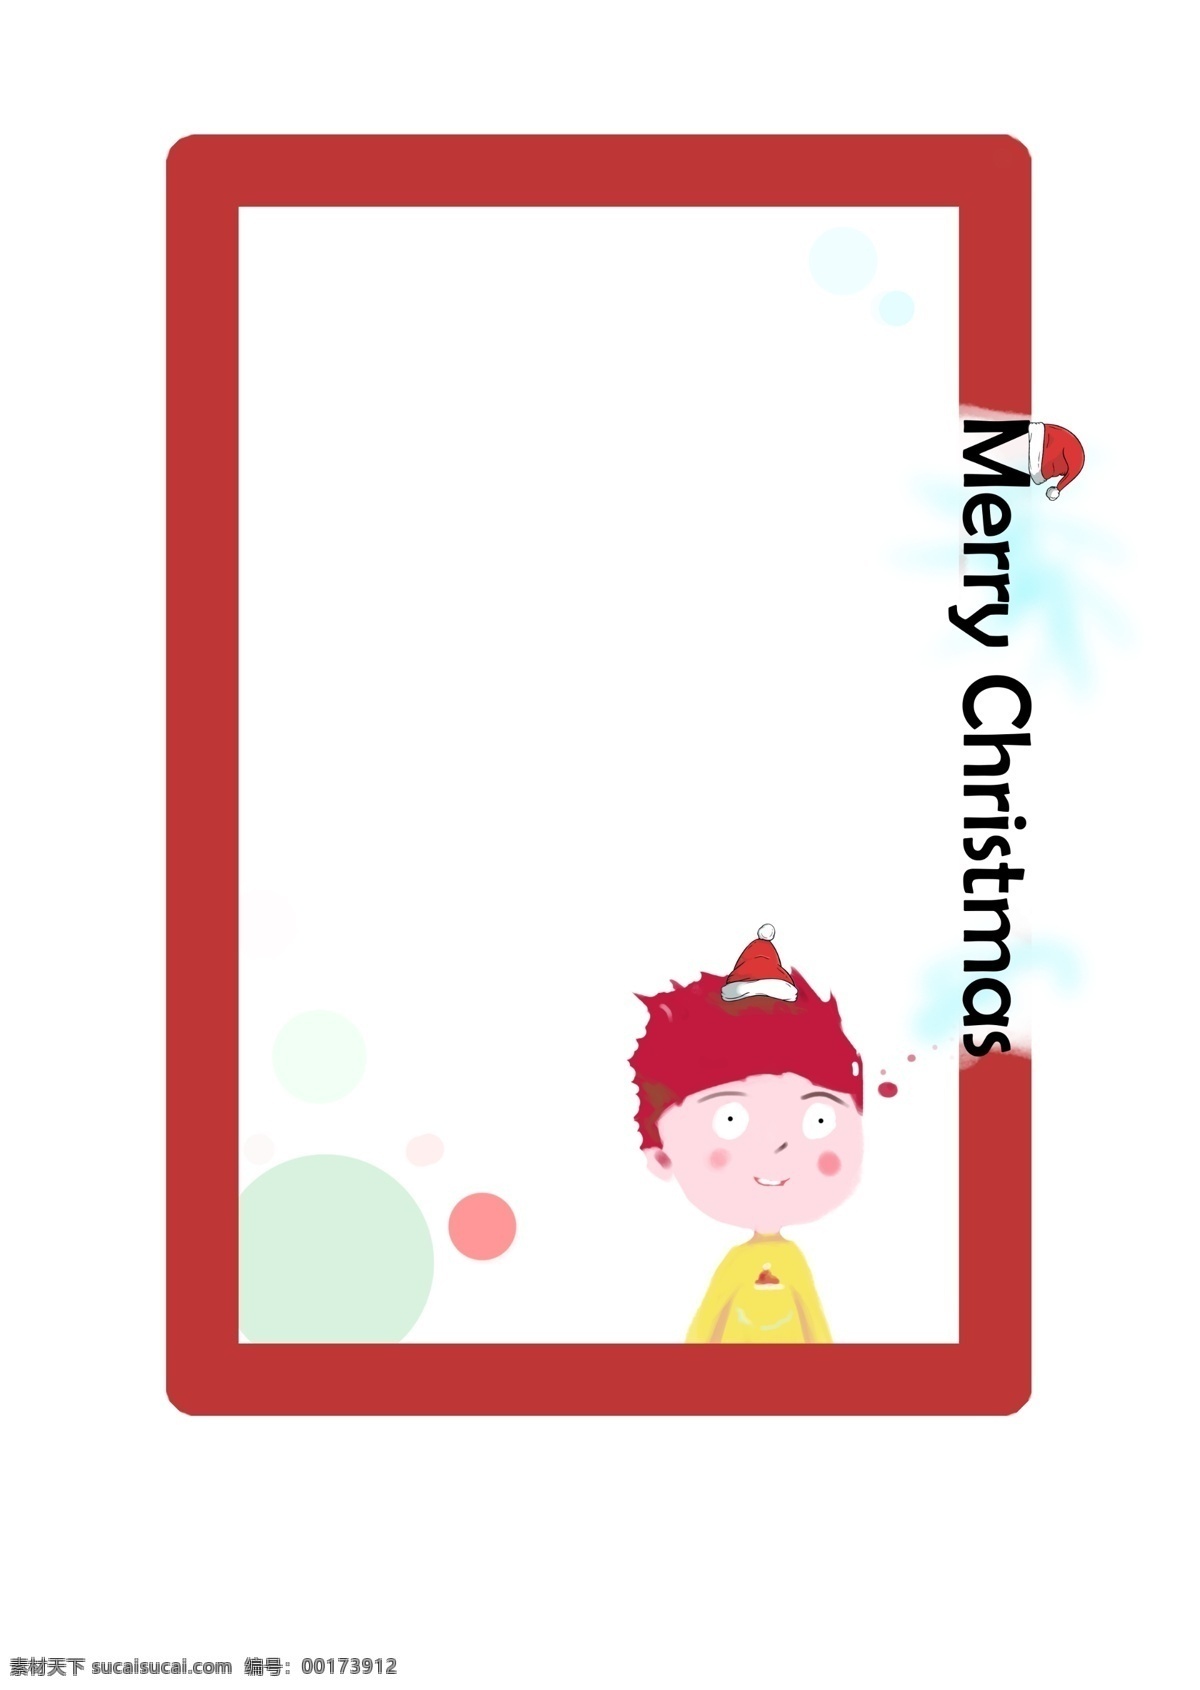 手绘 圣诞节 女孩 边框 红色的边框 红色的头发 英文字母边框 卡通边框 漂亮的边框